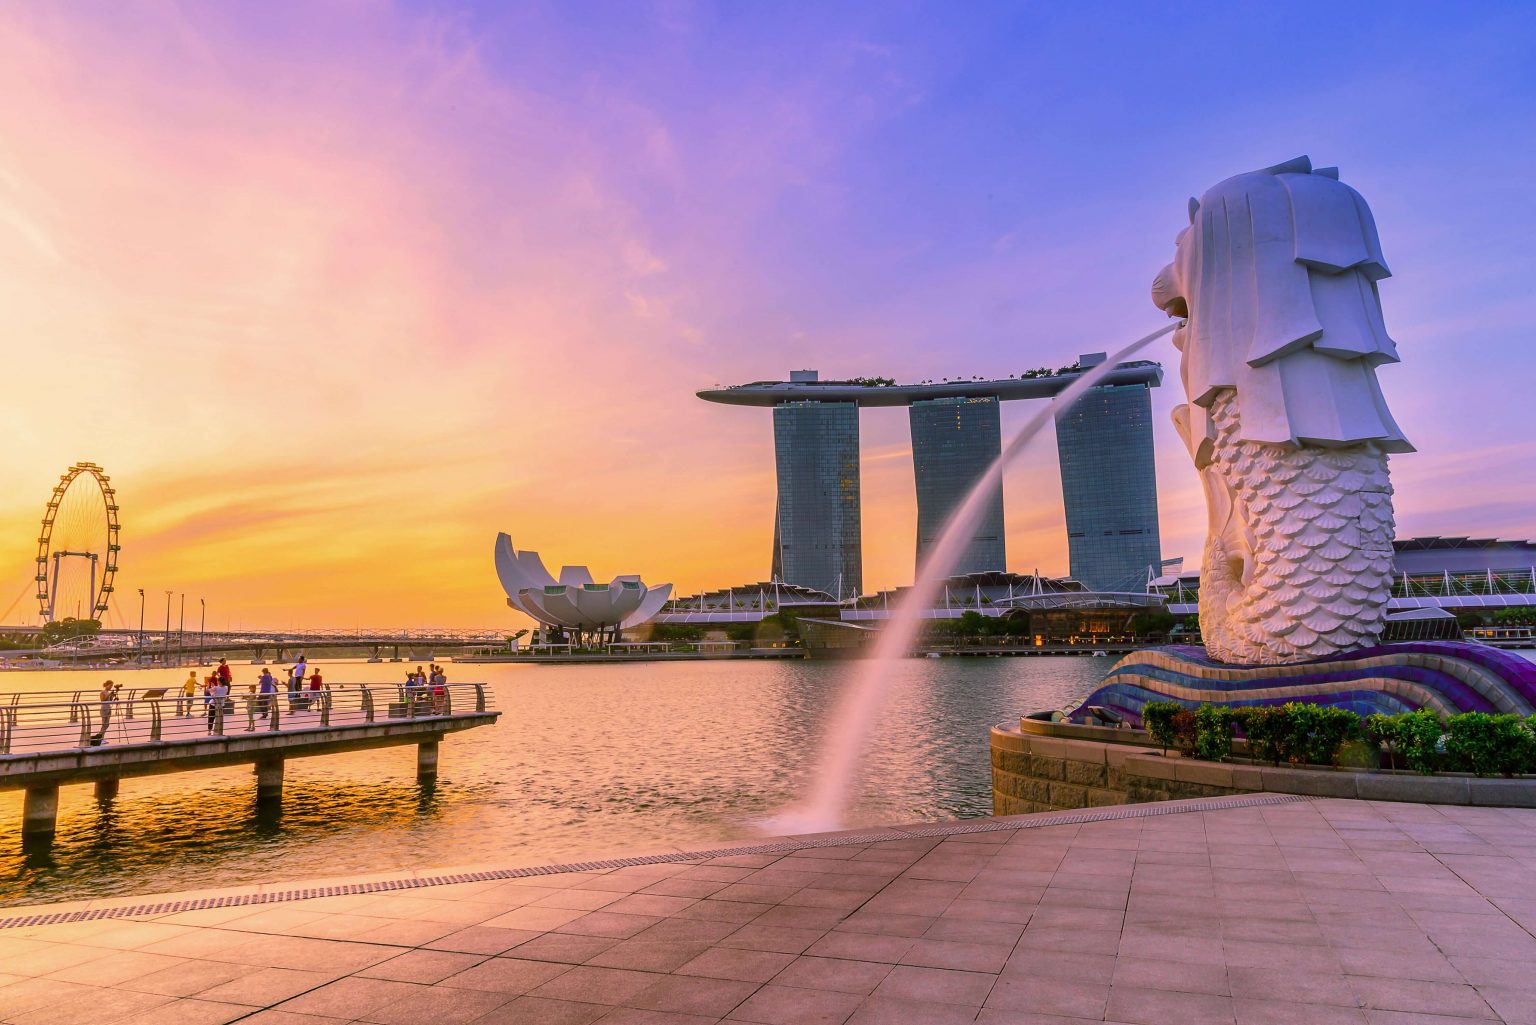 Tempat Wisata di Singapore yang Hits & Instagramable